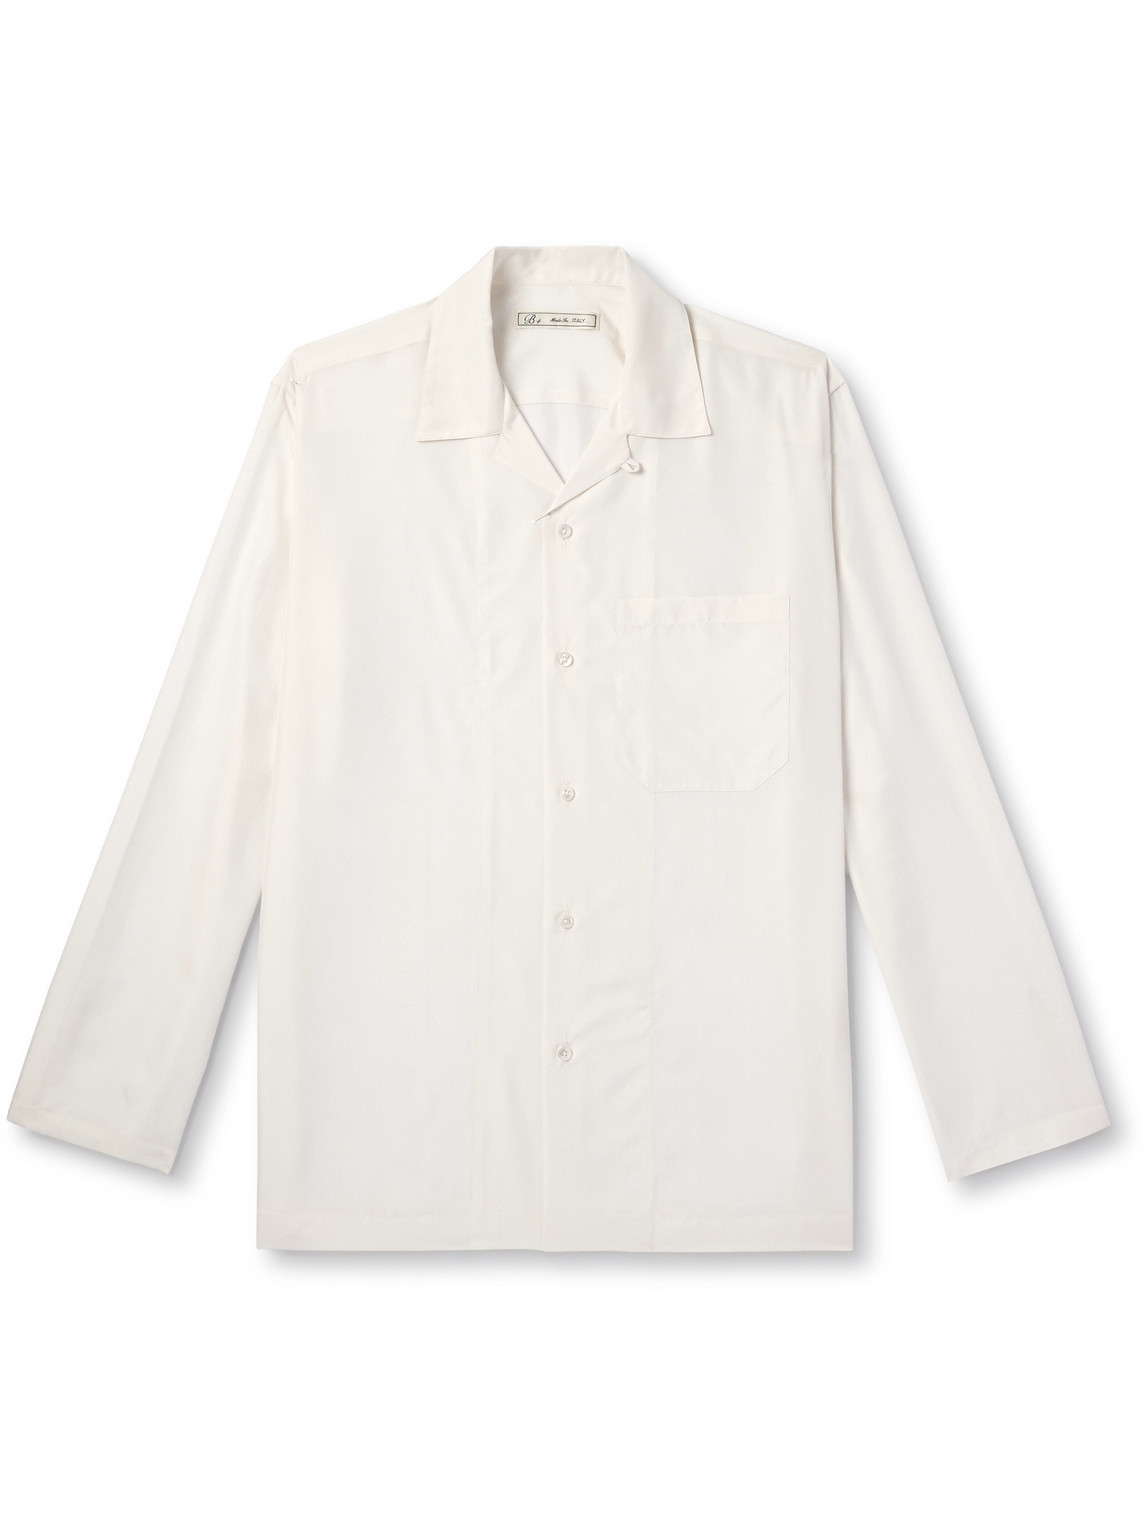 Umit Benan B+ Camp-collar Silk Shirt In White